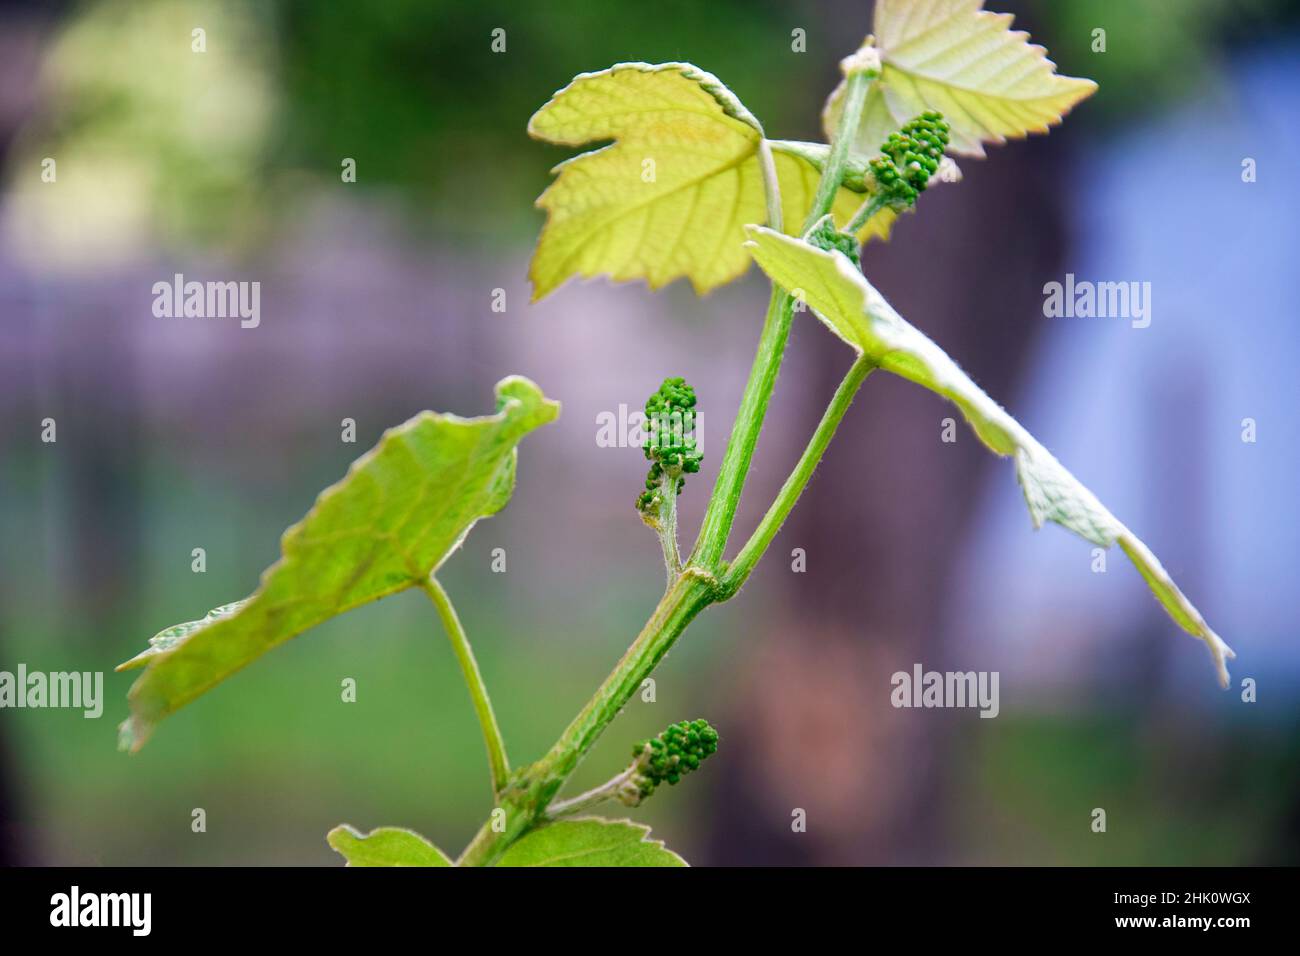 Junge Weinrebe mit kleinen grünen Trauben auf verschwommenem Hintergrund. Knospen, Früchte. Ansicht von unten. Nahaufnahme. Selektiver Fokus. Speicherplatz kopieren. Stockfoto